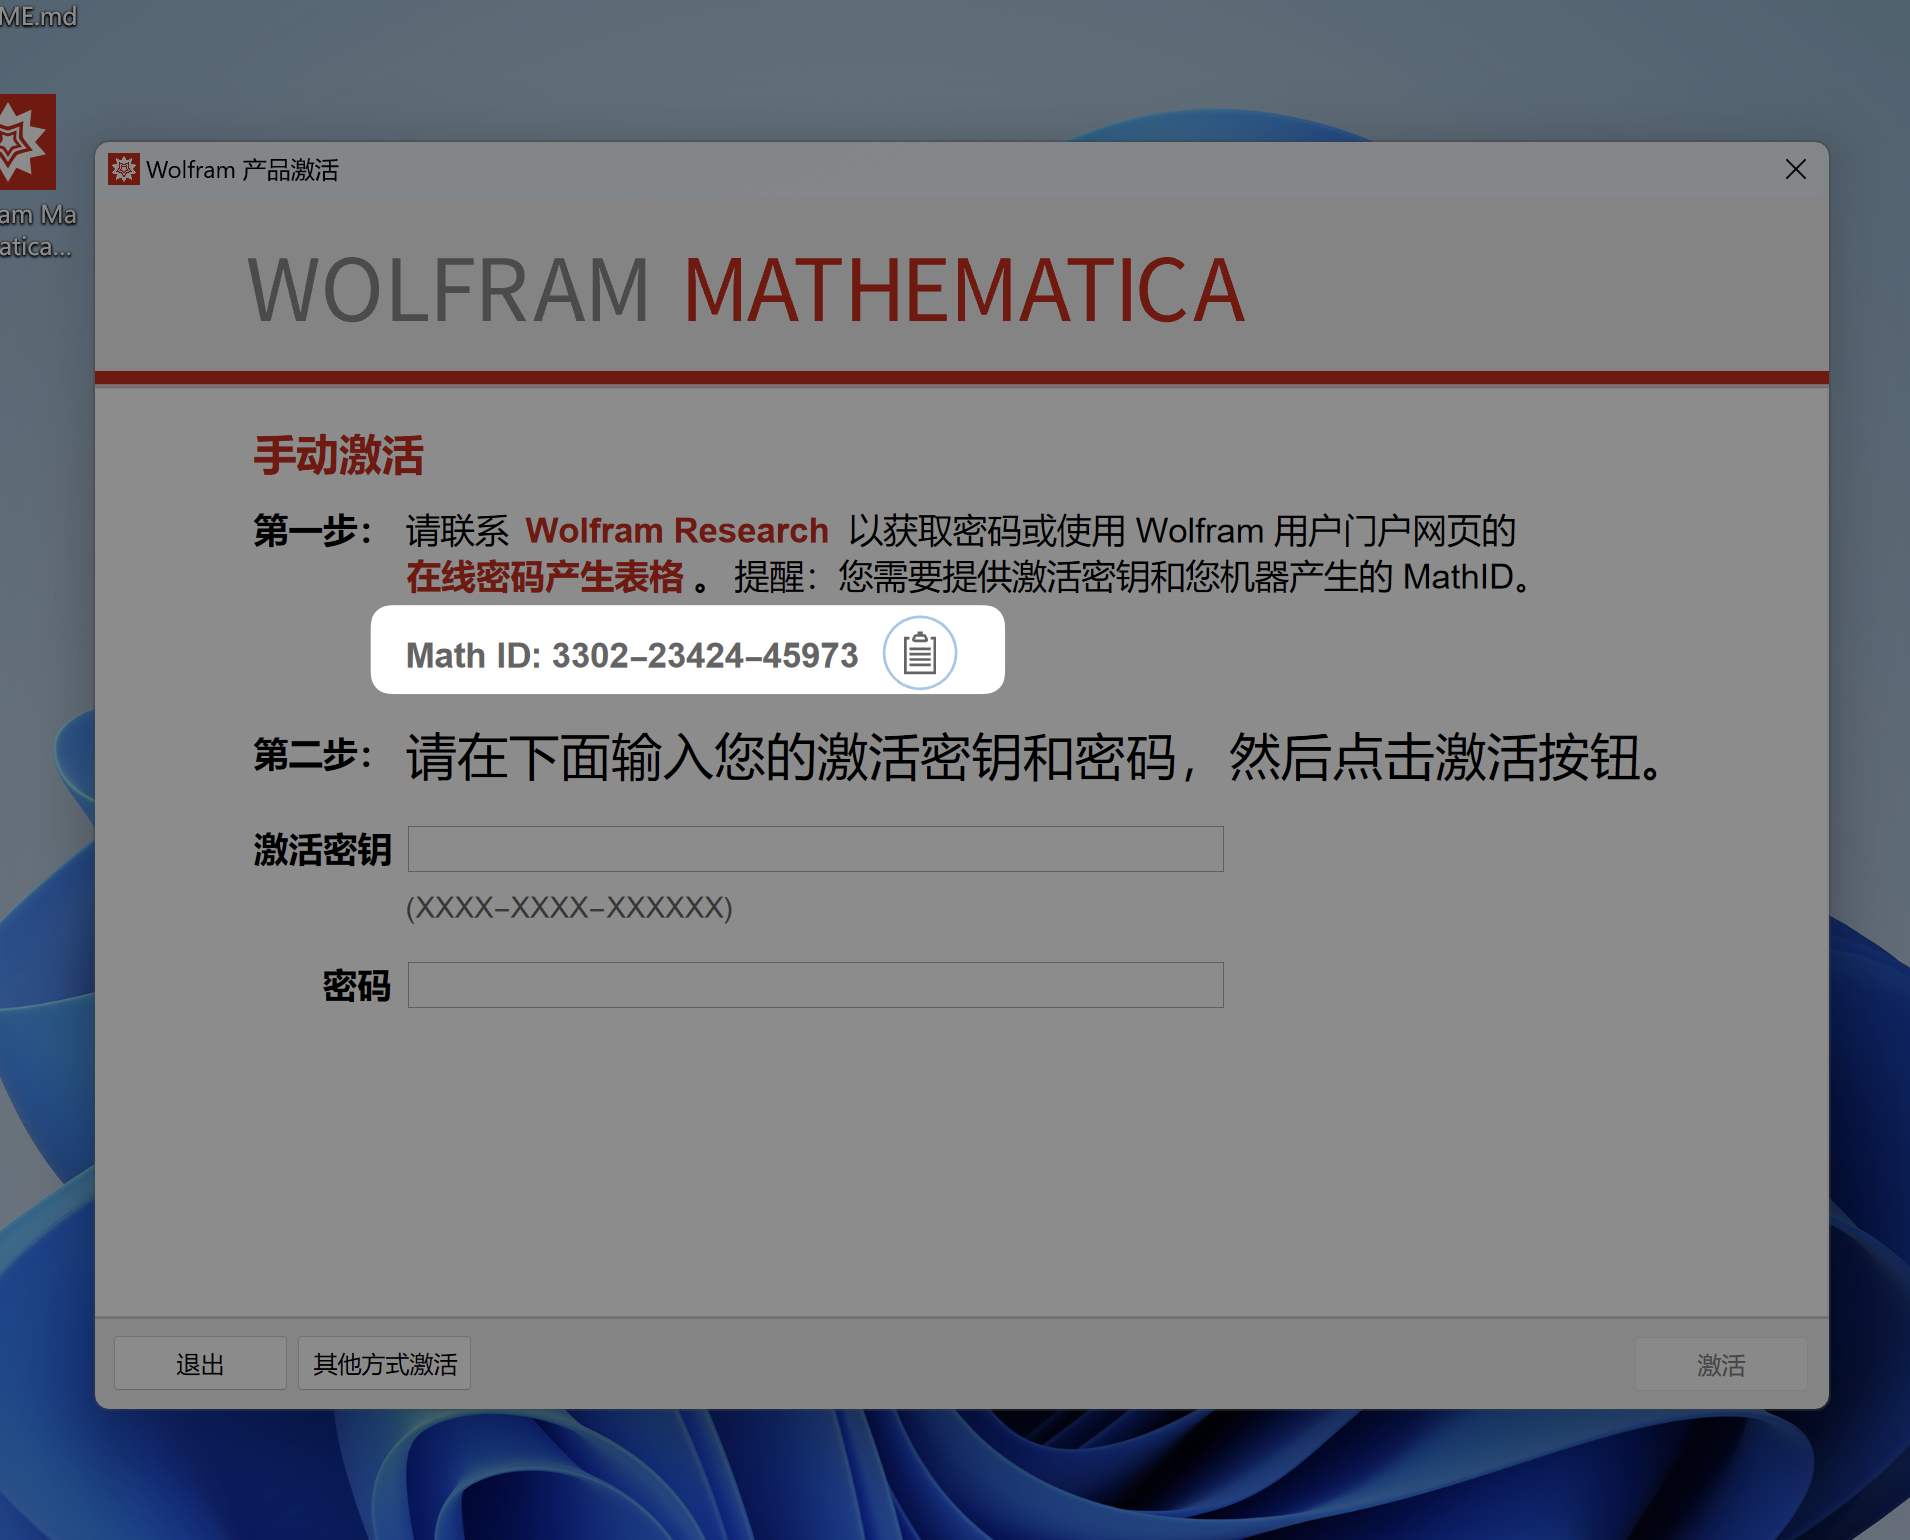 「互联网速记」也许是最优雅的 Wolfram Mathematica 破解方式 - 8